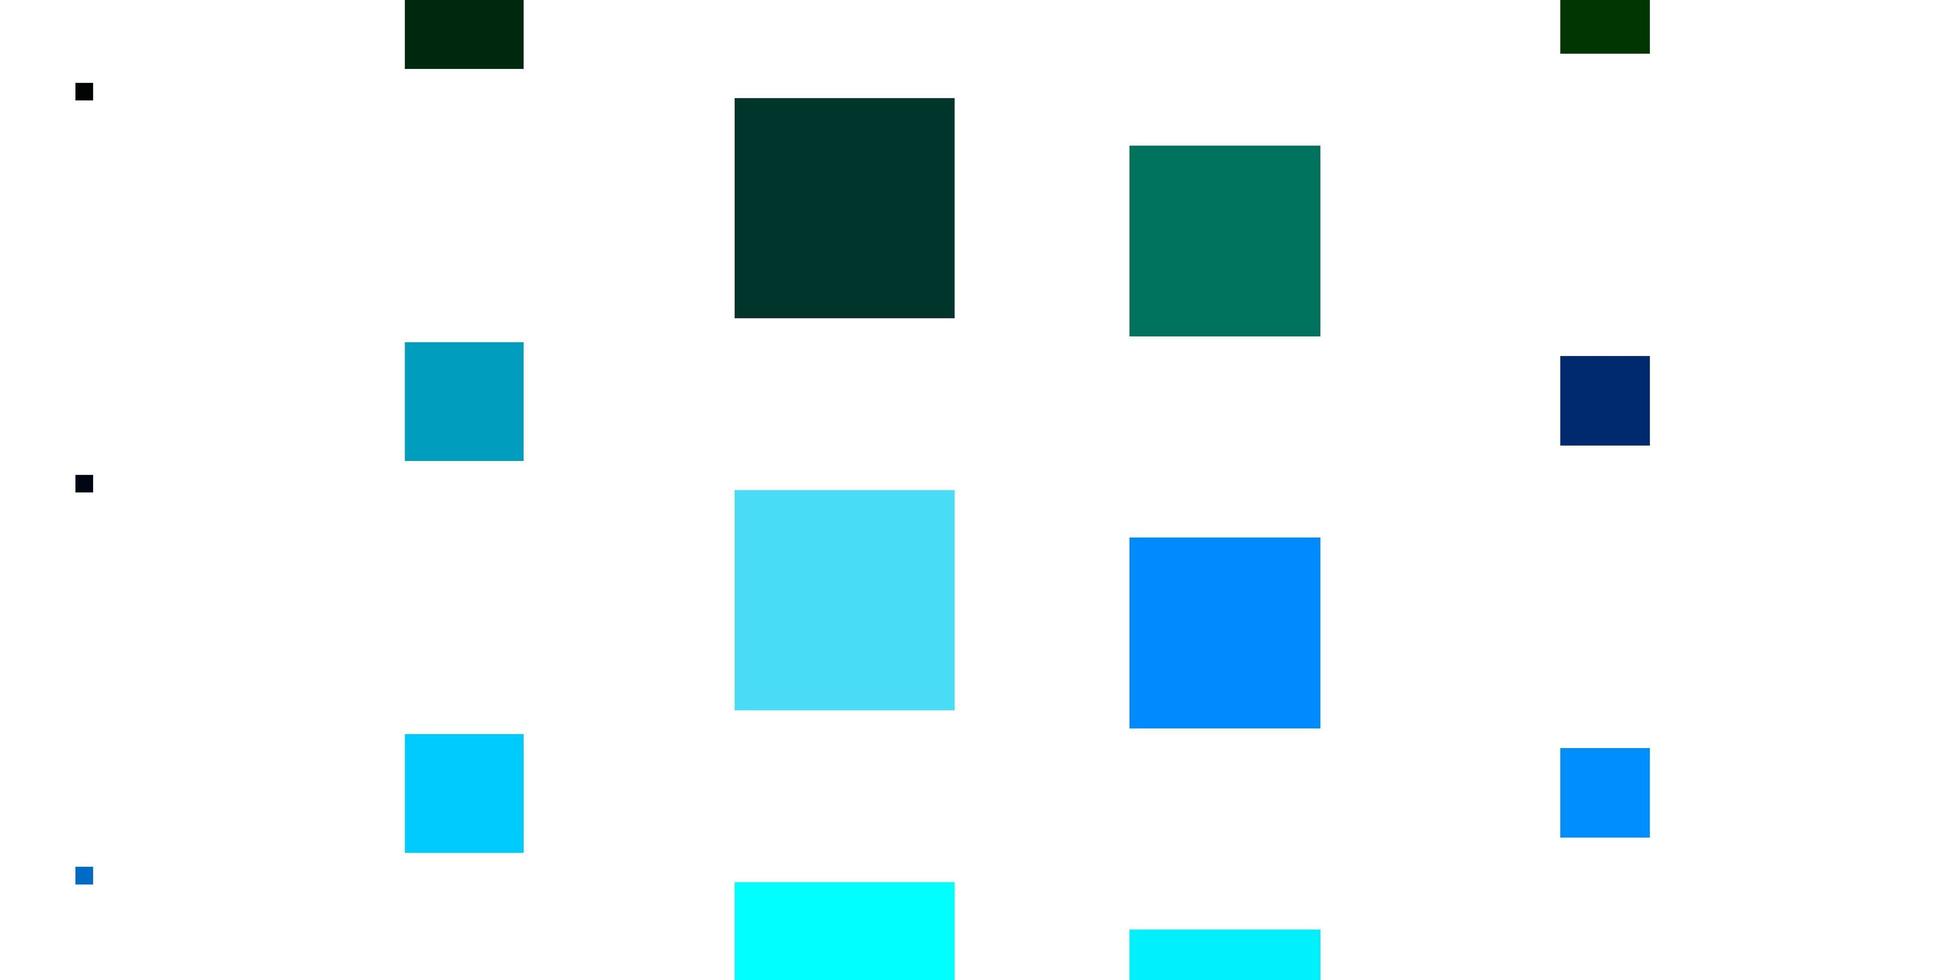 modelo de vetor azul e verde claro em retângulos. nova ilustração abstrata com formas retangulares. modelo para celulares.